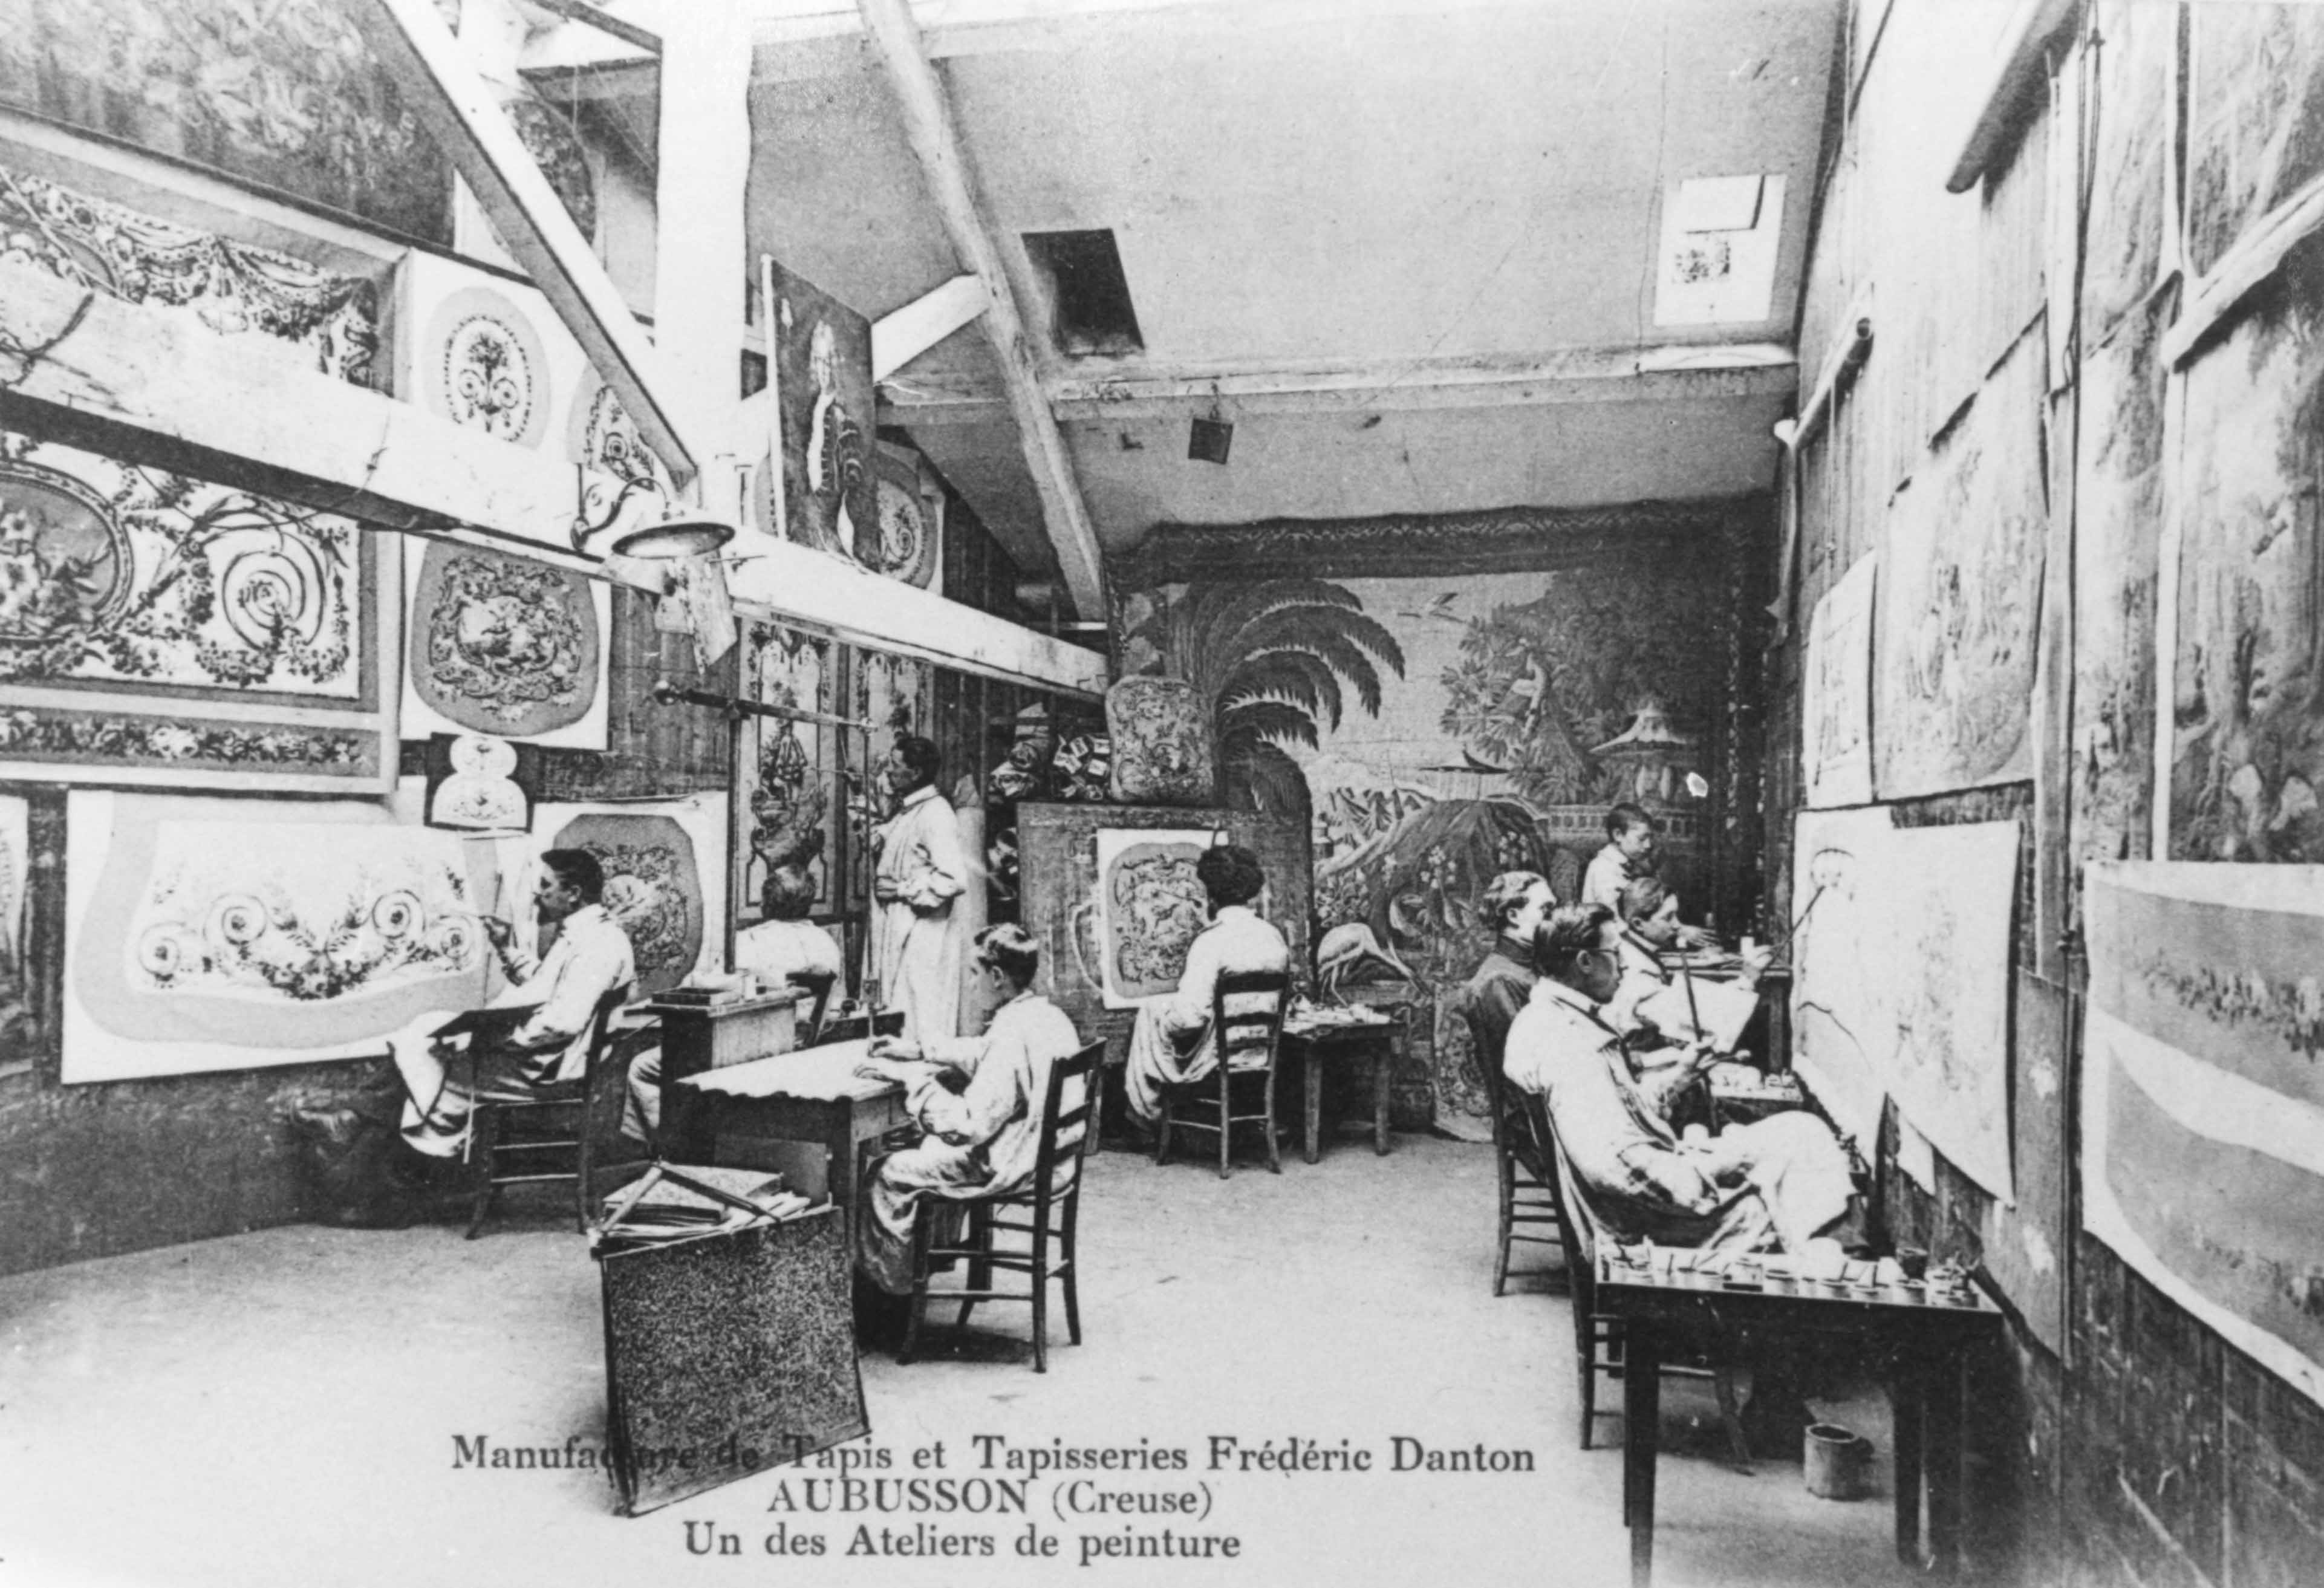 Carte postale (1er quart du 20e siècle) d'un atelier de peinture de la manufacture Danton, avec les cartonniers au travail (Aubusson, centre de documentation du Musée départemental de la Tapisserie)